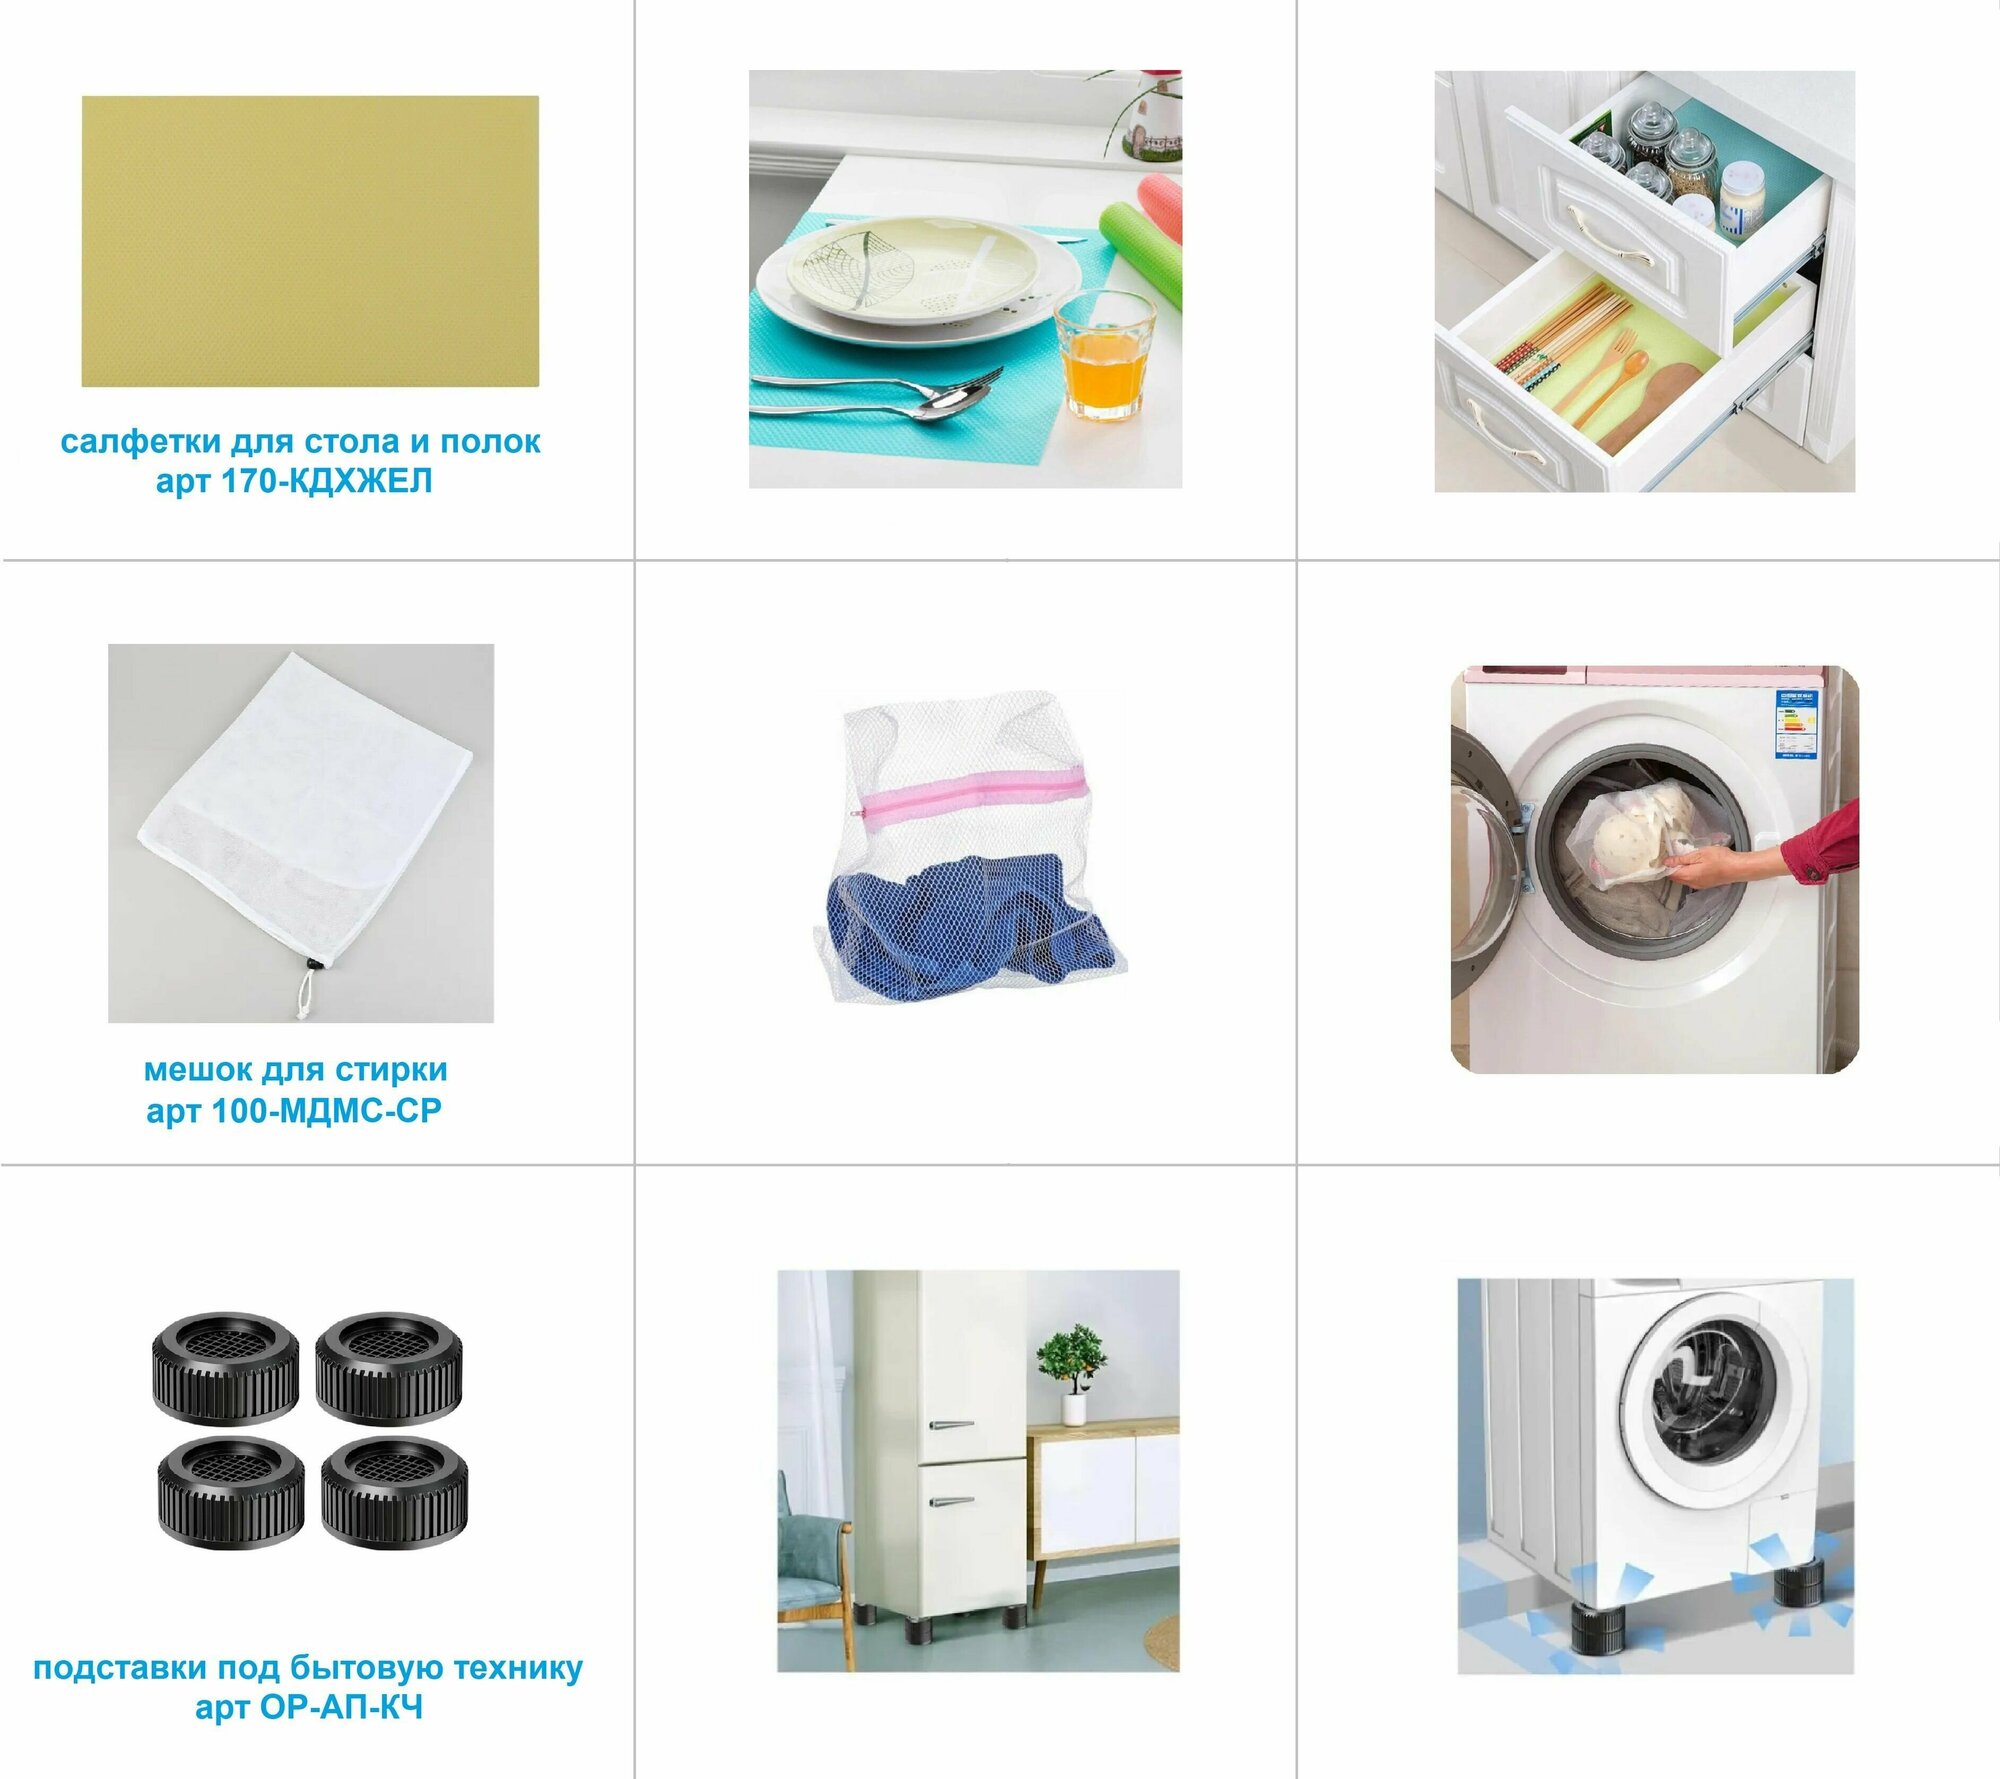 Антивибрационные подставки для стиральной машины и холодильника, круглые, 4 штуки, цвет черный / Шумопоглощающие подставки под бытовую технику - фотография № 4